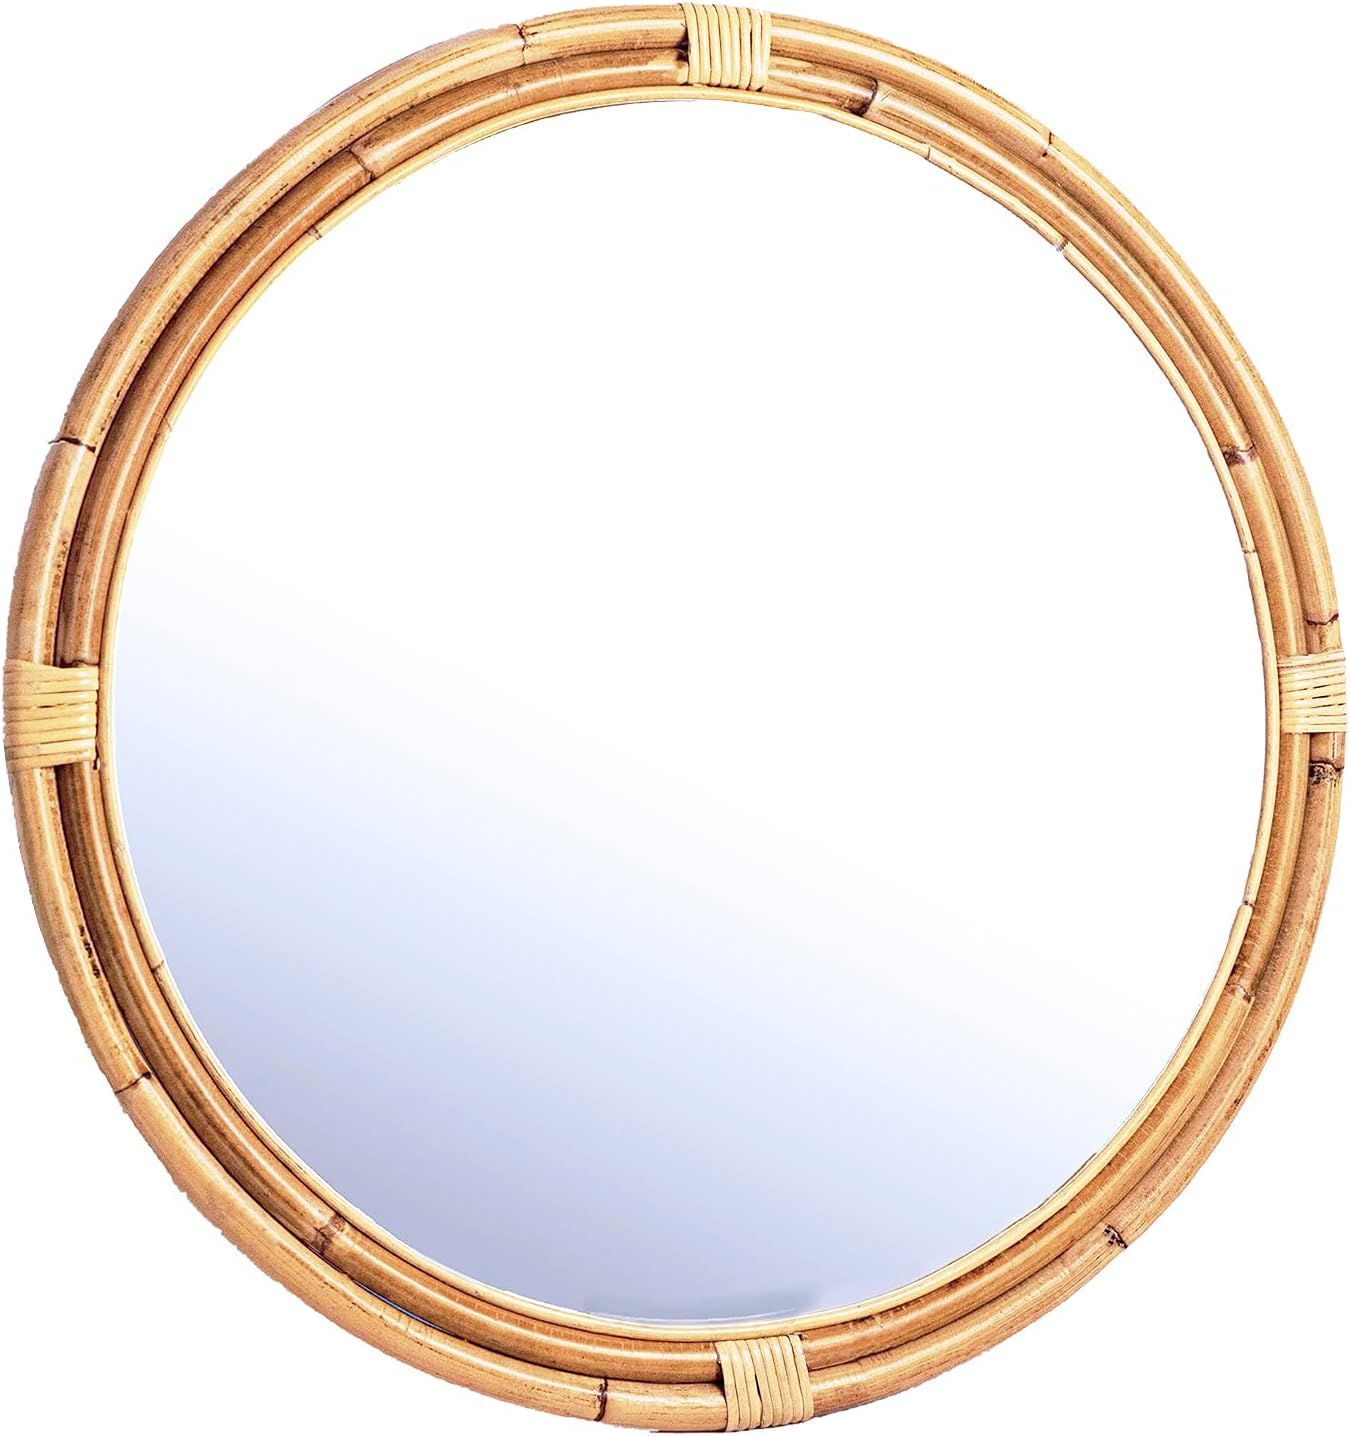 SORBARIA Natural Rattan Frame Round Mirror (Large-30 Dia) | Amazon (US)